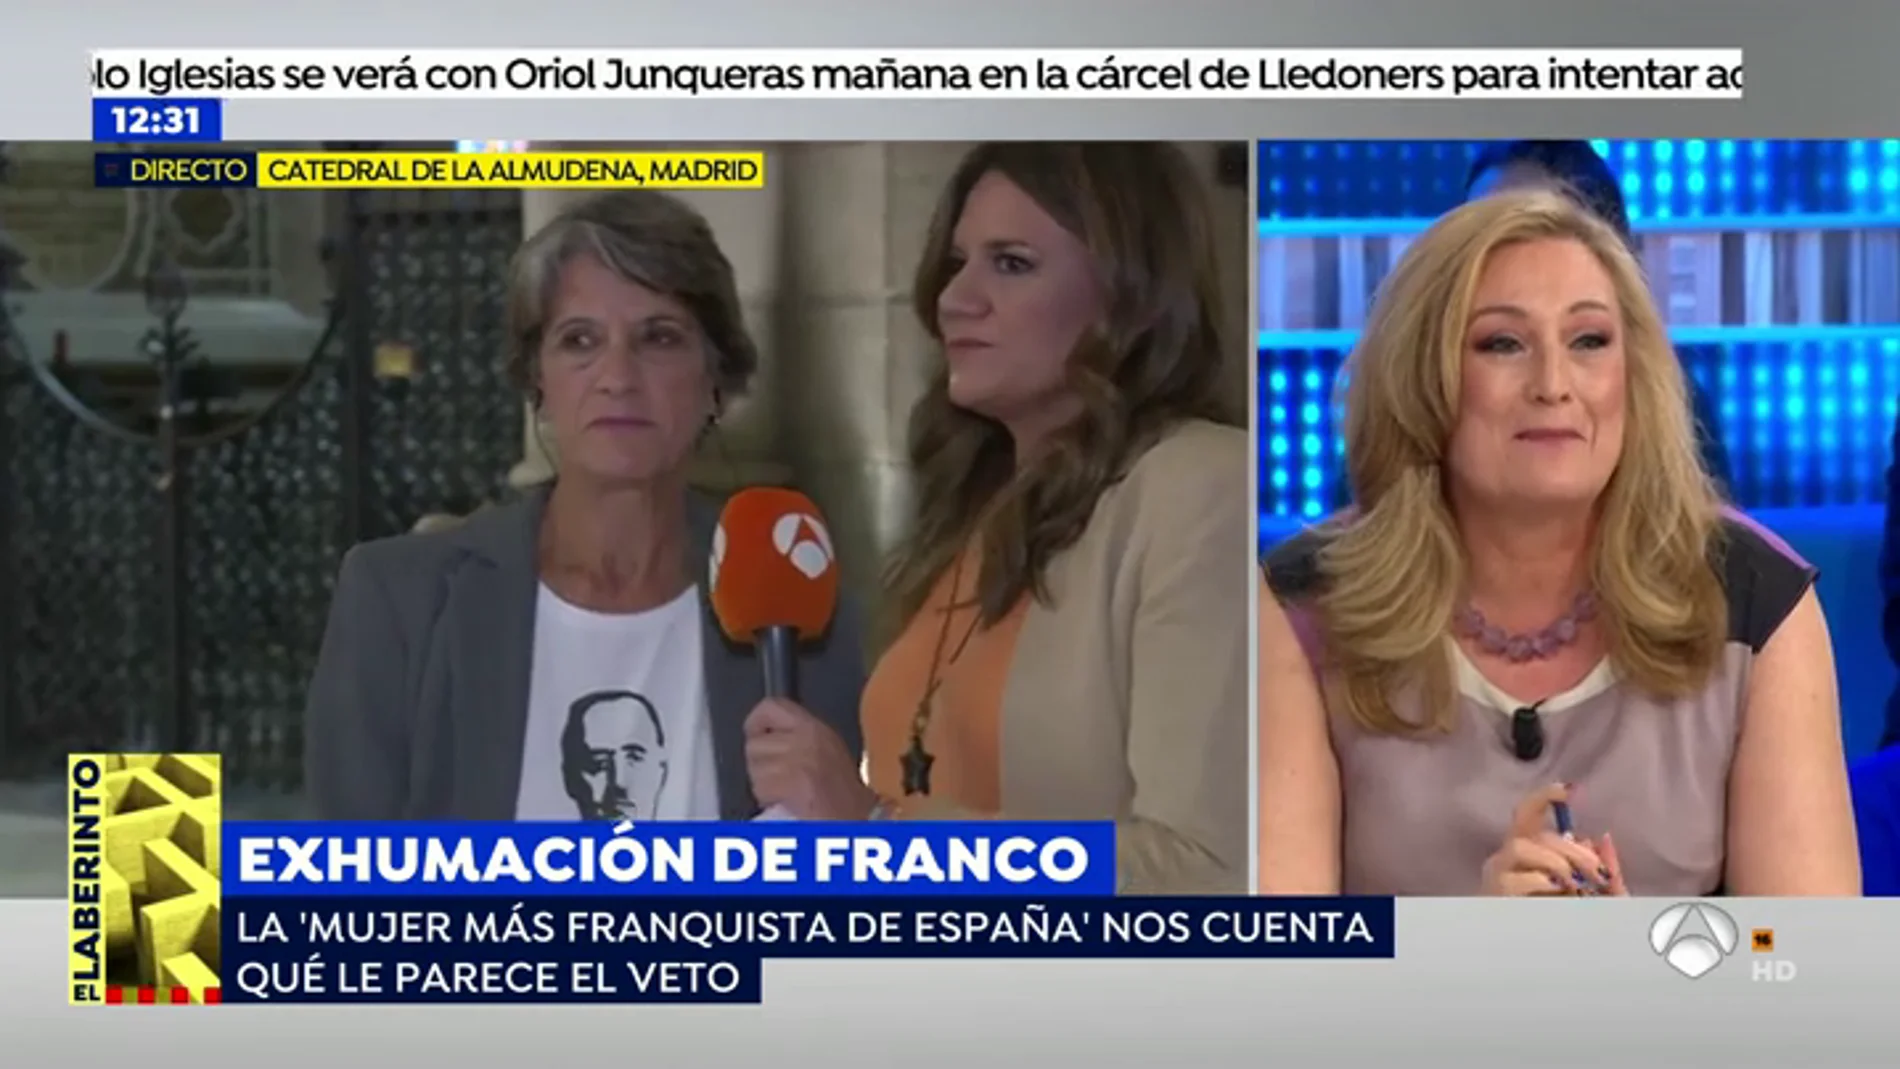 Enfrentamiento entre Elisa Beni y 'la mujer más franquista de España': "Elisa, Franco fue un santo comparado con Pedro Sánchez y contigo, hija"